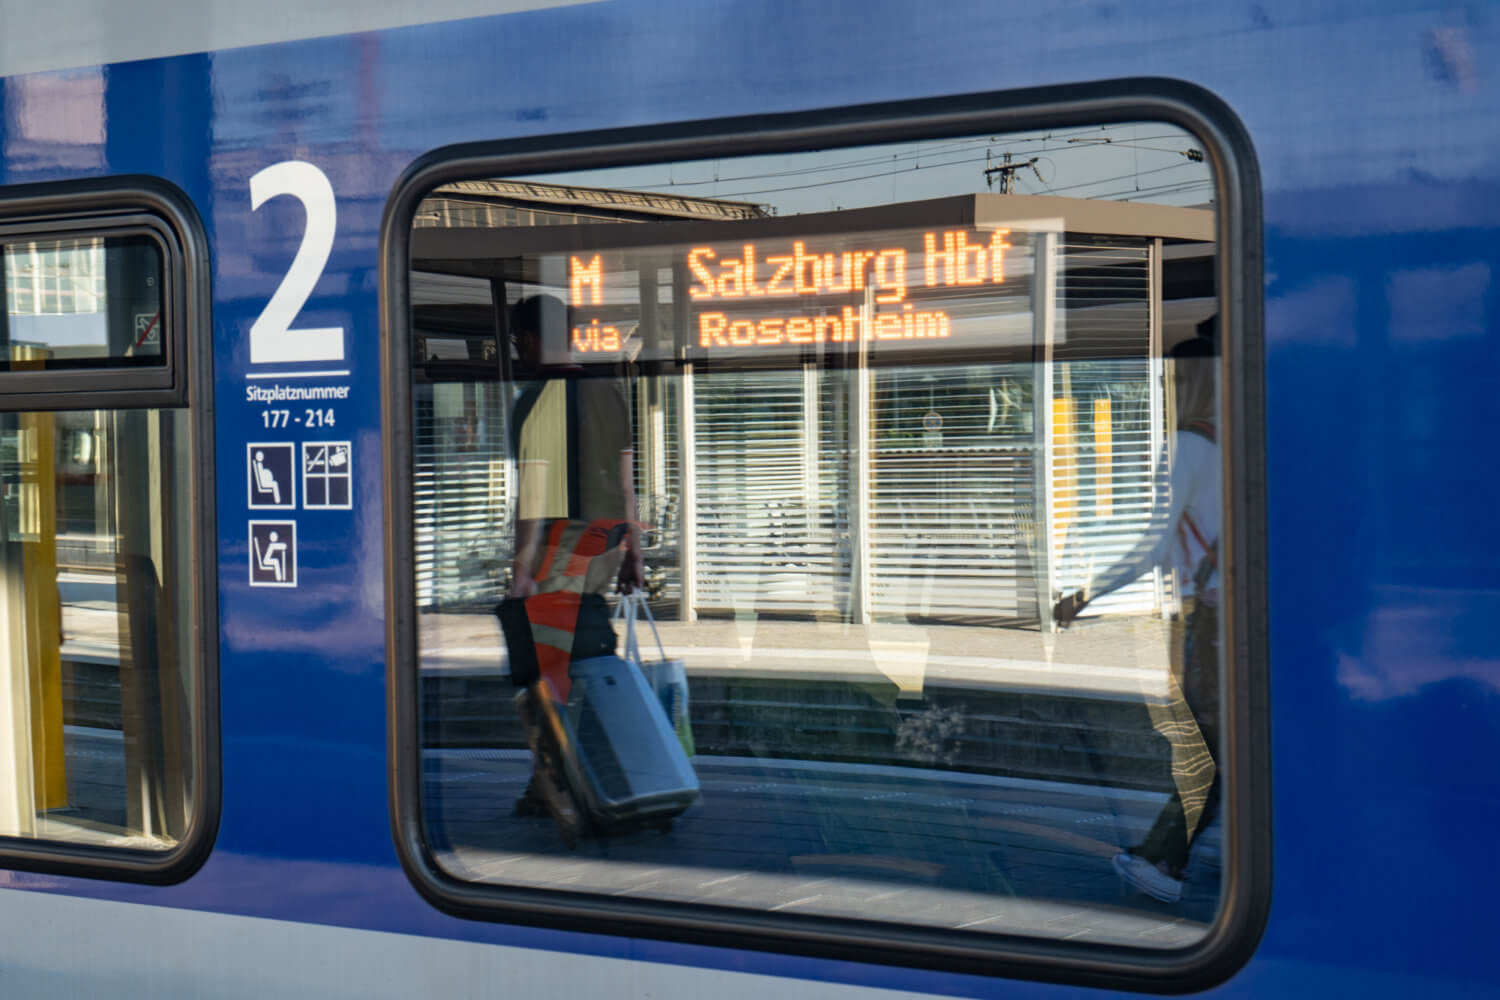 Meridian train from Munich to Salzburg